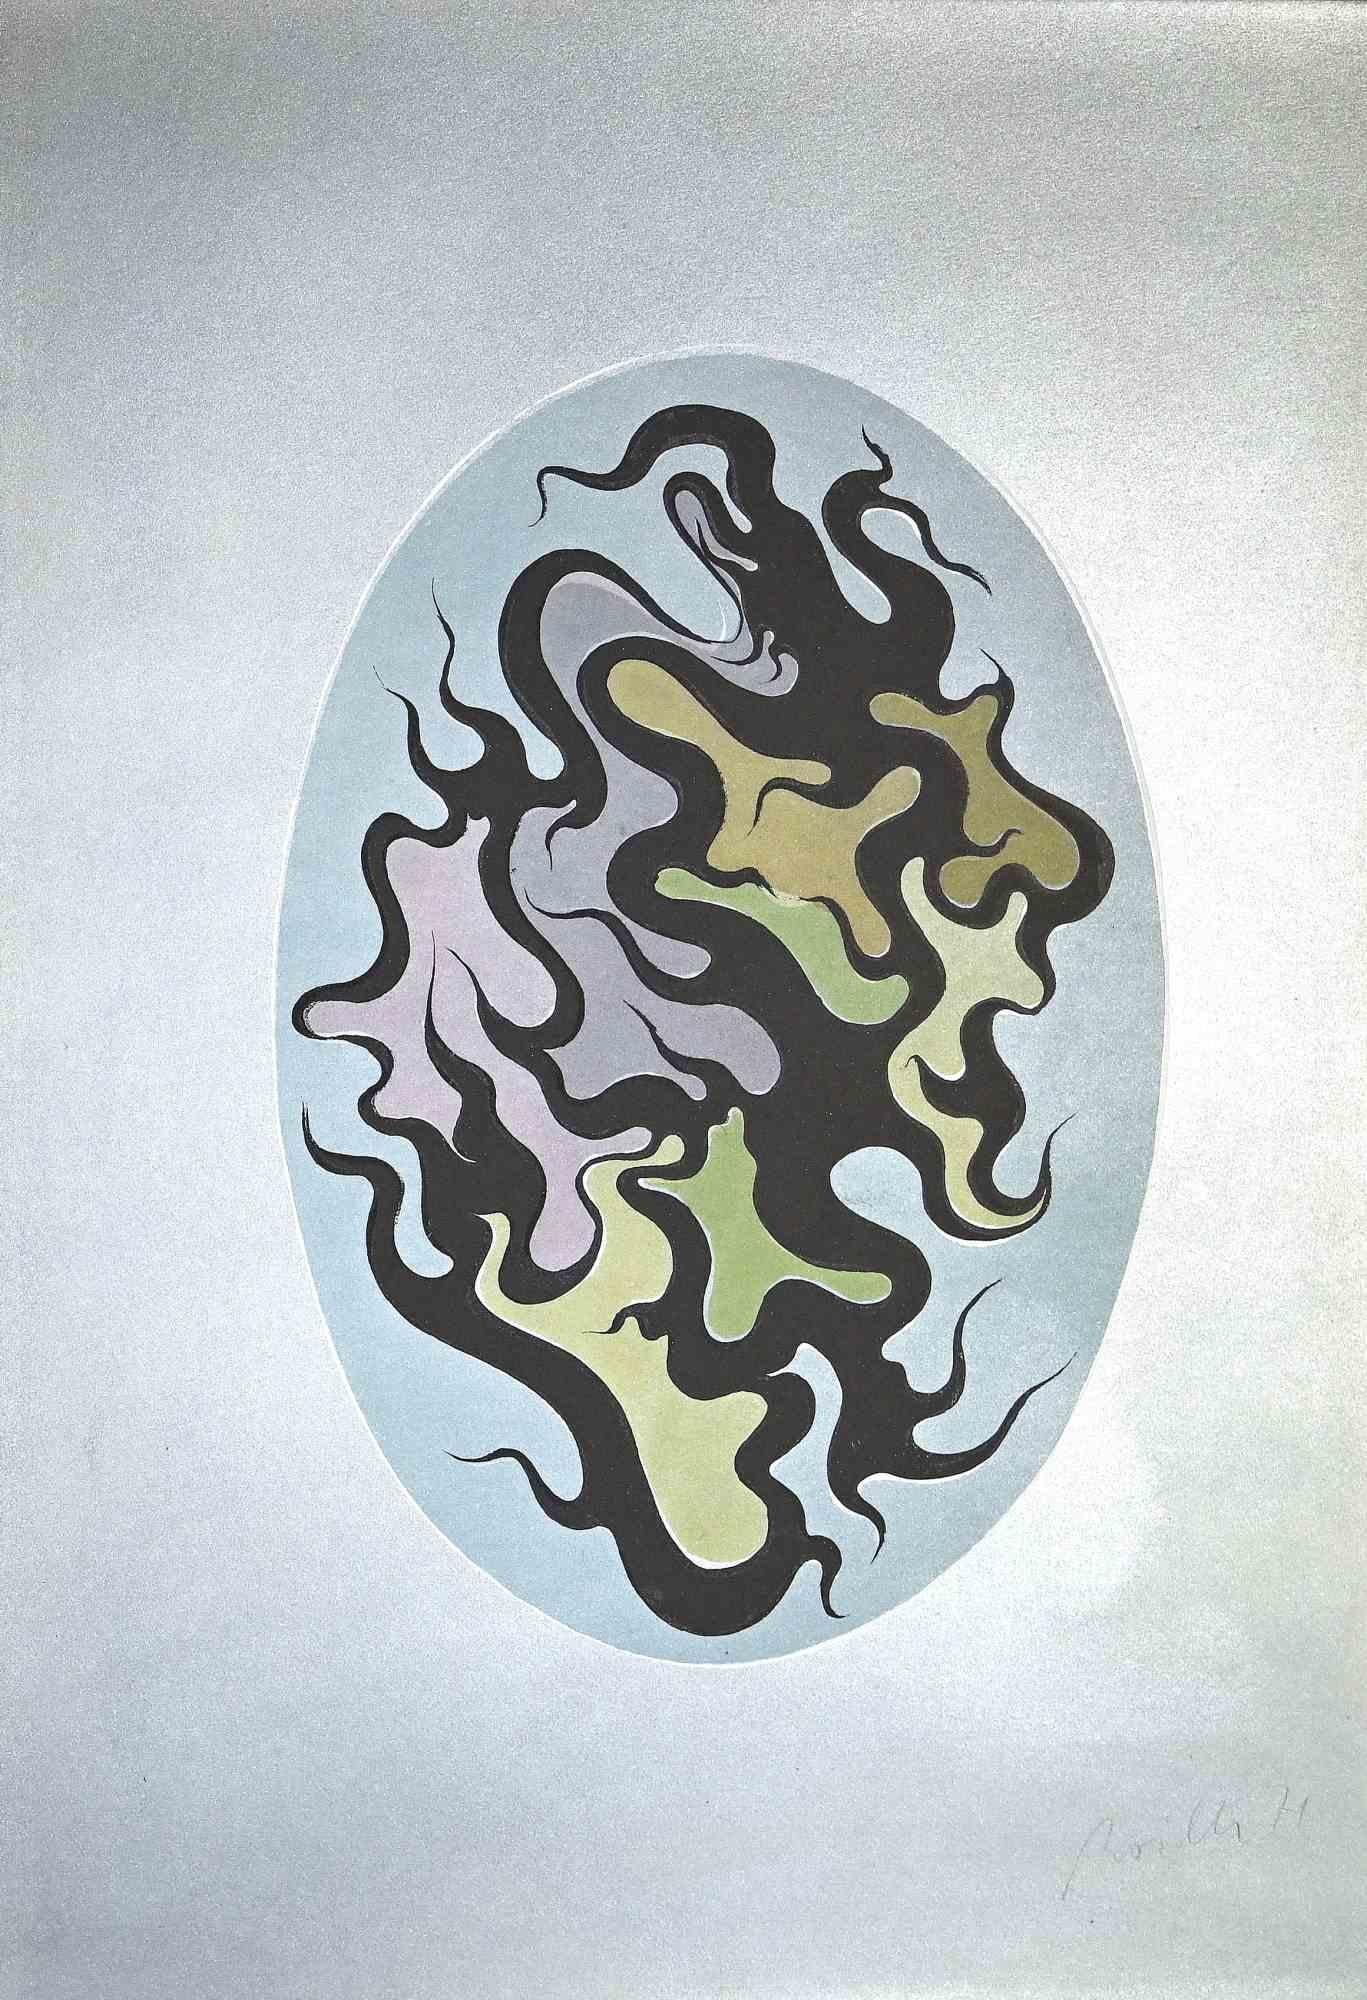 Composition est une sérigraphie originale réalisée par l'artiste Luigi Boille en 1971.

Elle est en excellent état.

signé juste en dessous de l'image.

L'œuvre d'art est représentée par une composition harmonieuse.